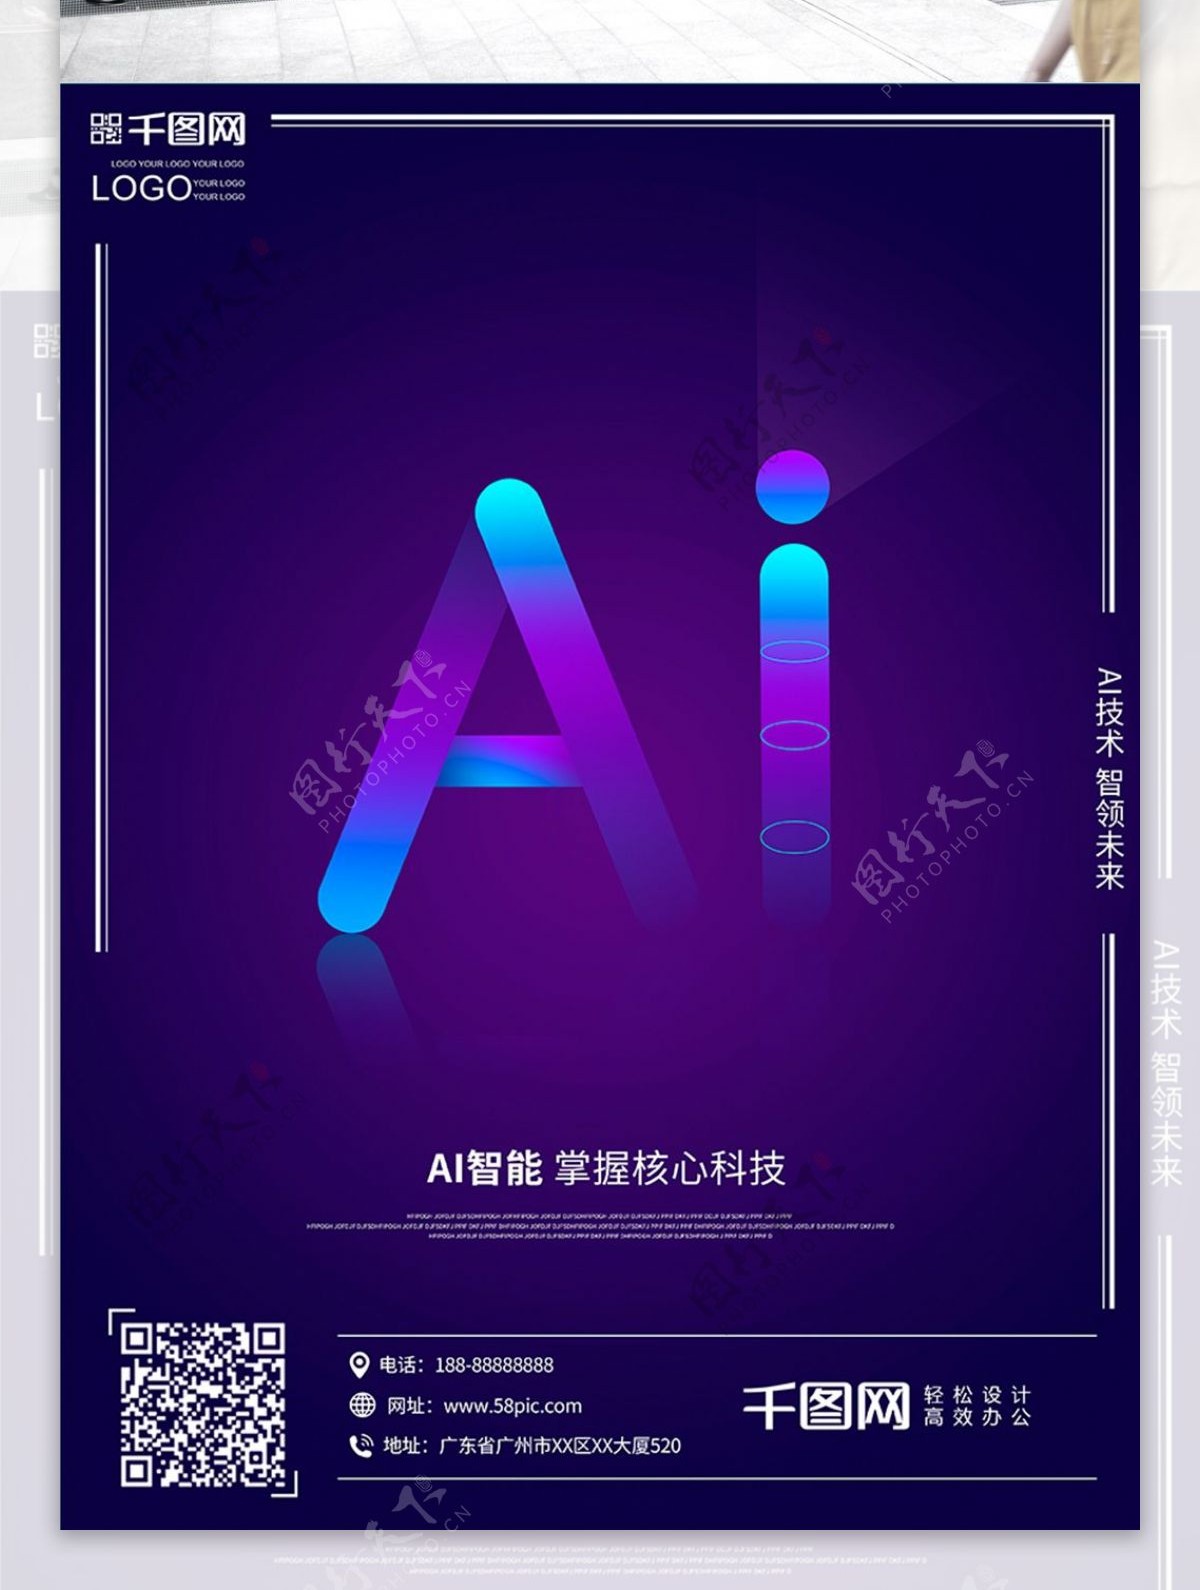 AI人工智能科技创意未来海报